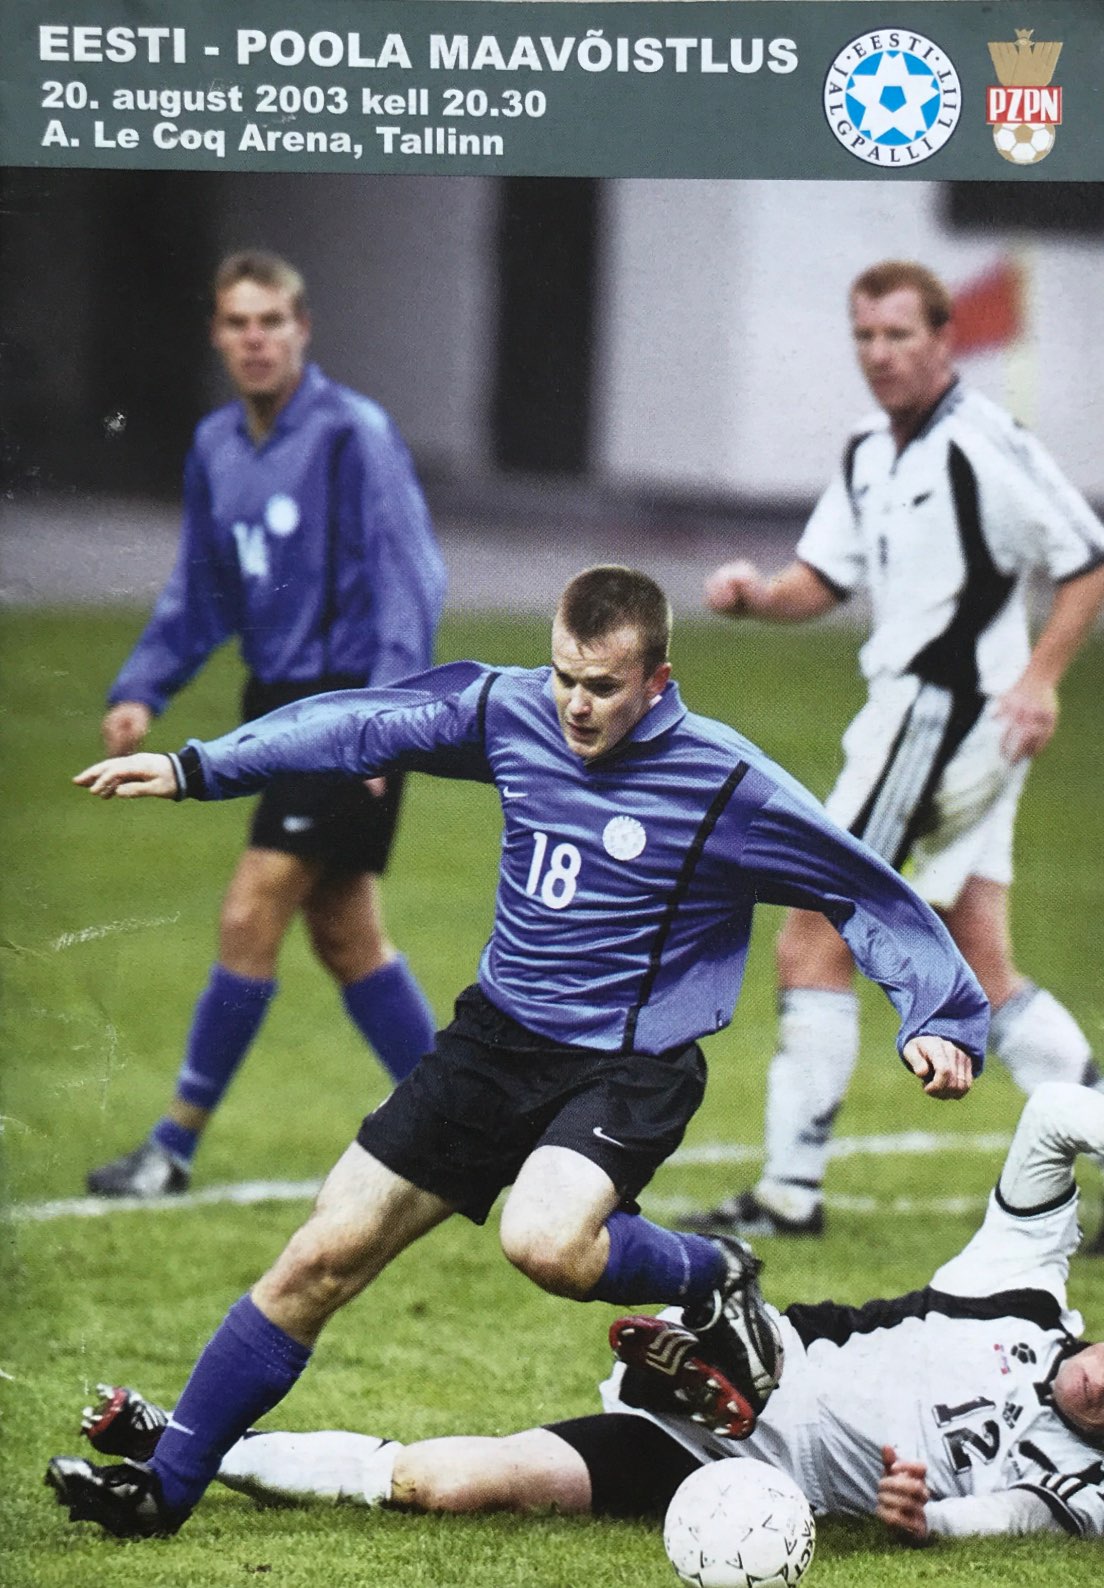 Program meczowy Estonia - Polska 1:2 (20.08.2003).